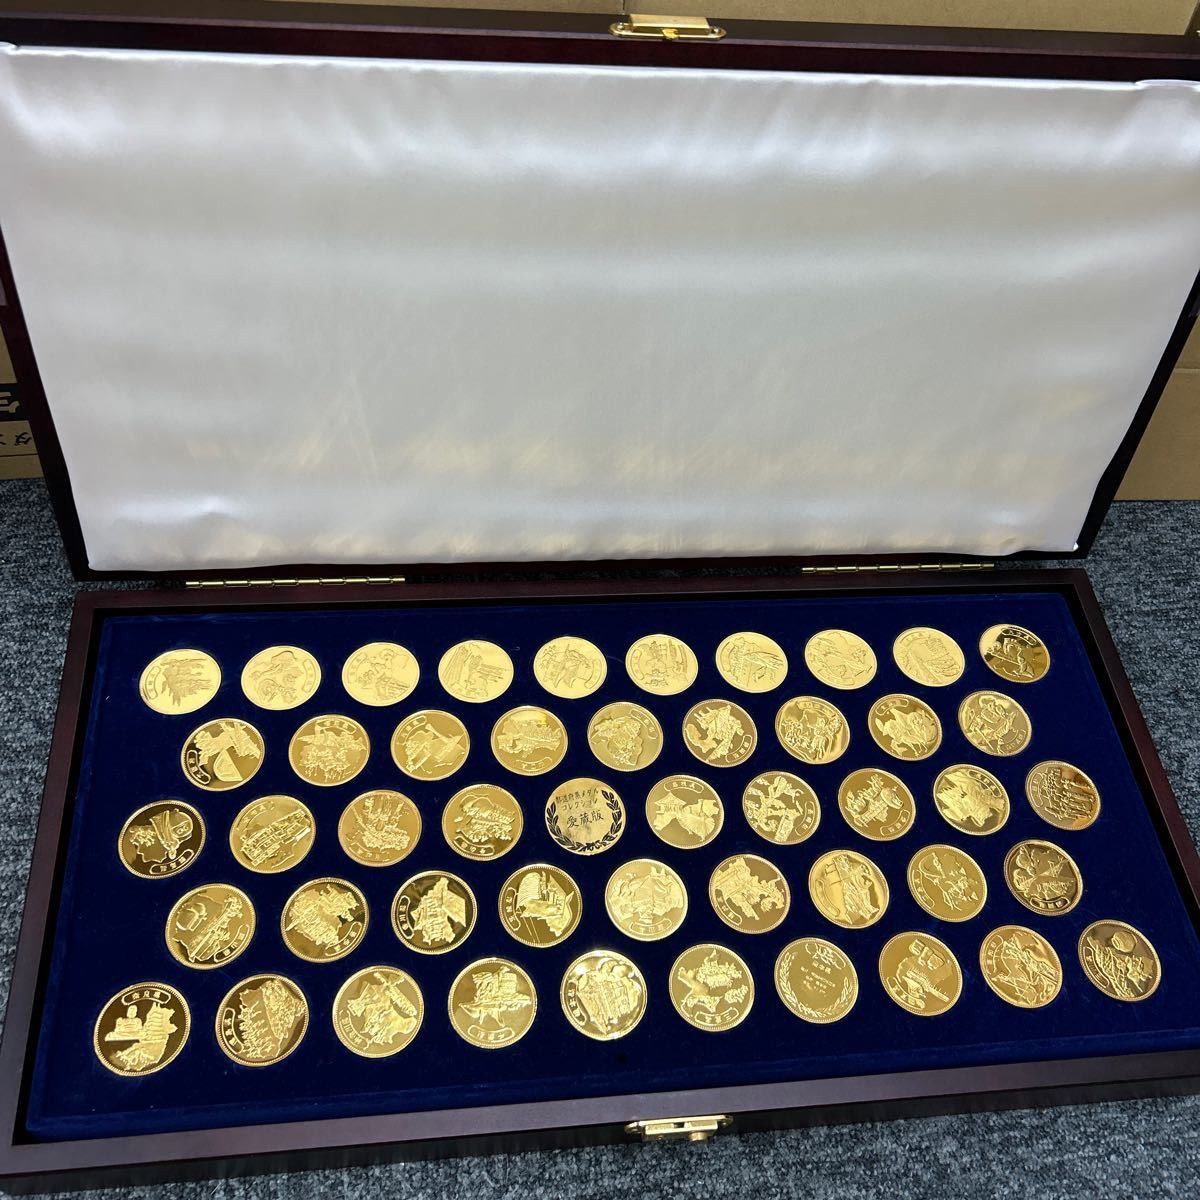 【99721】都道府県メダルコレクション 愛蔵版 メダルセット ケース付き 999 SILVER _画像1